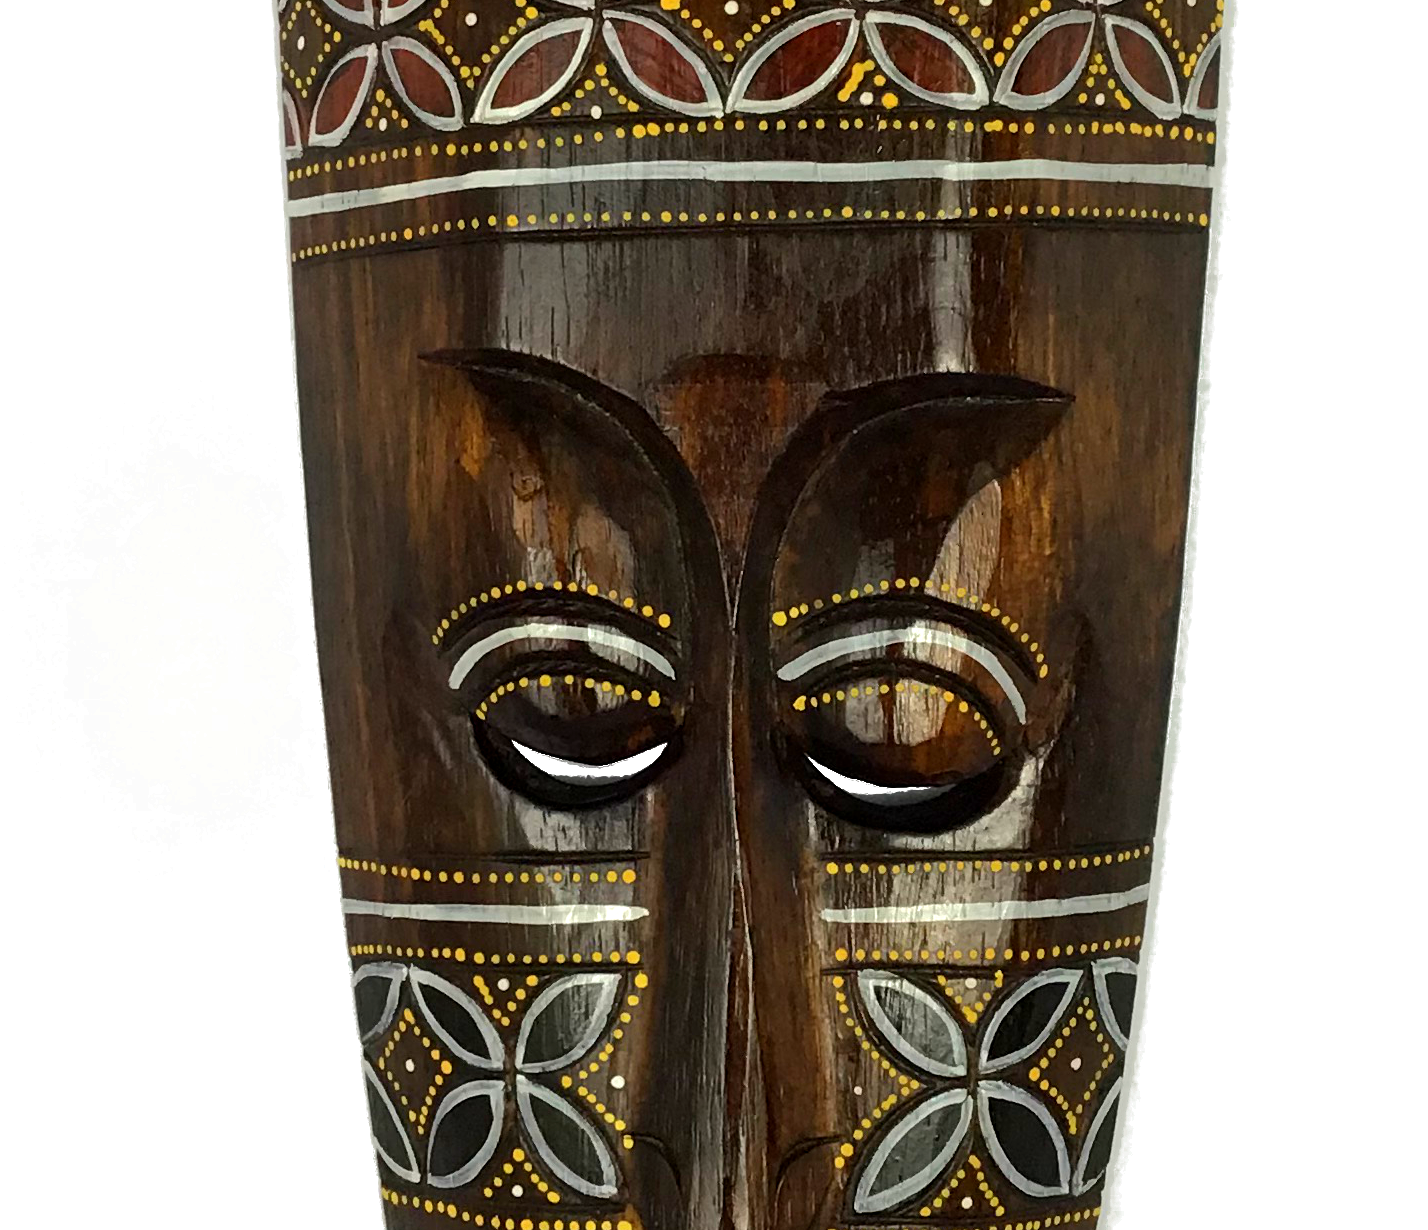 Carranca Máscara Madeira de Parede 50cm